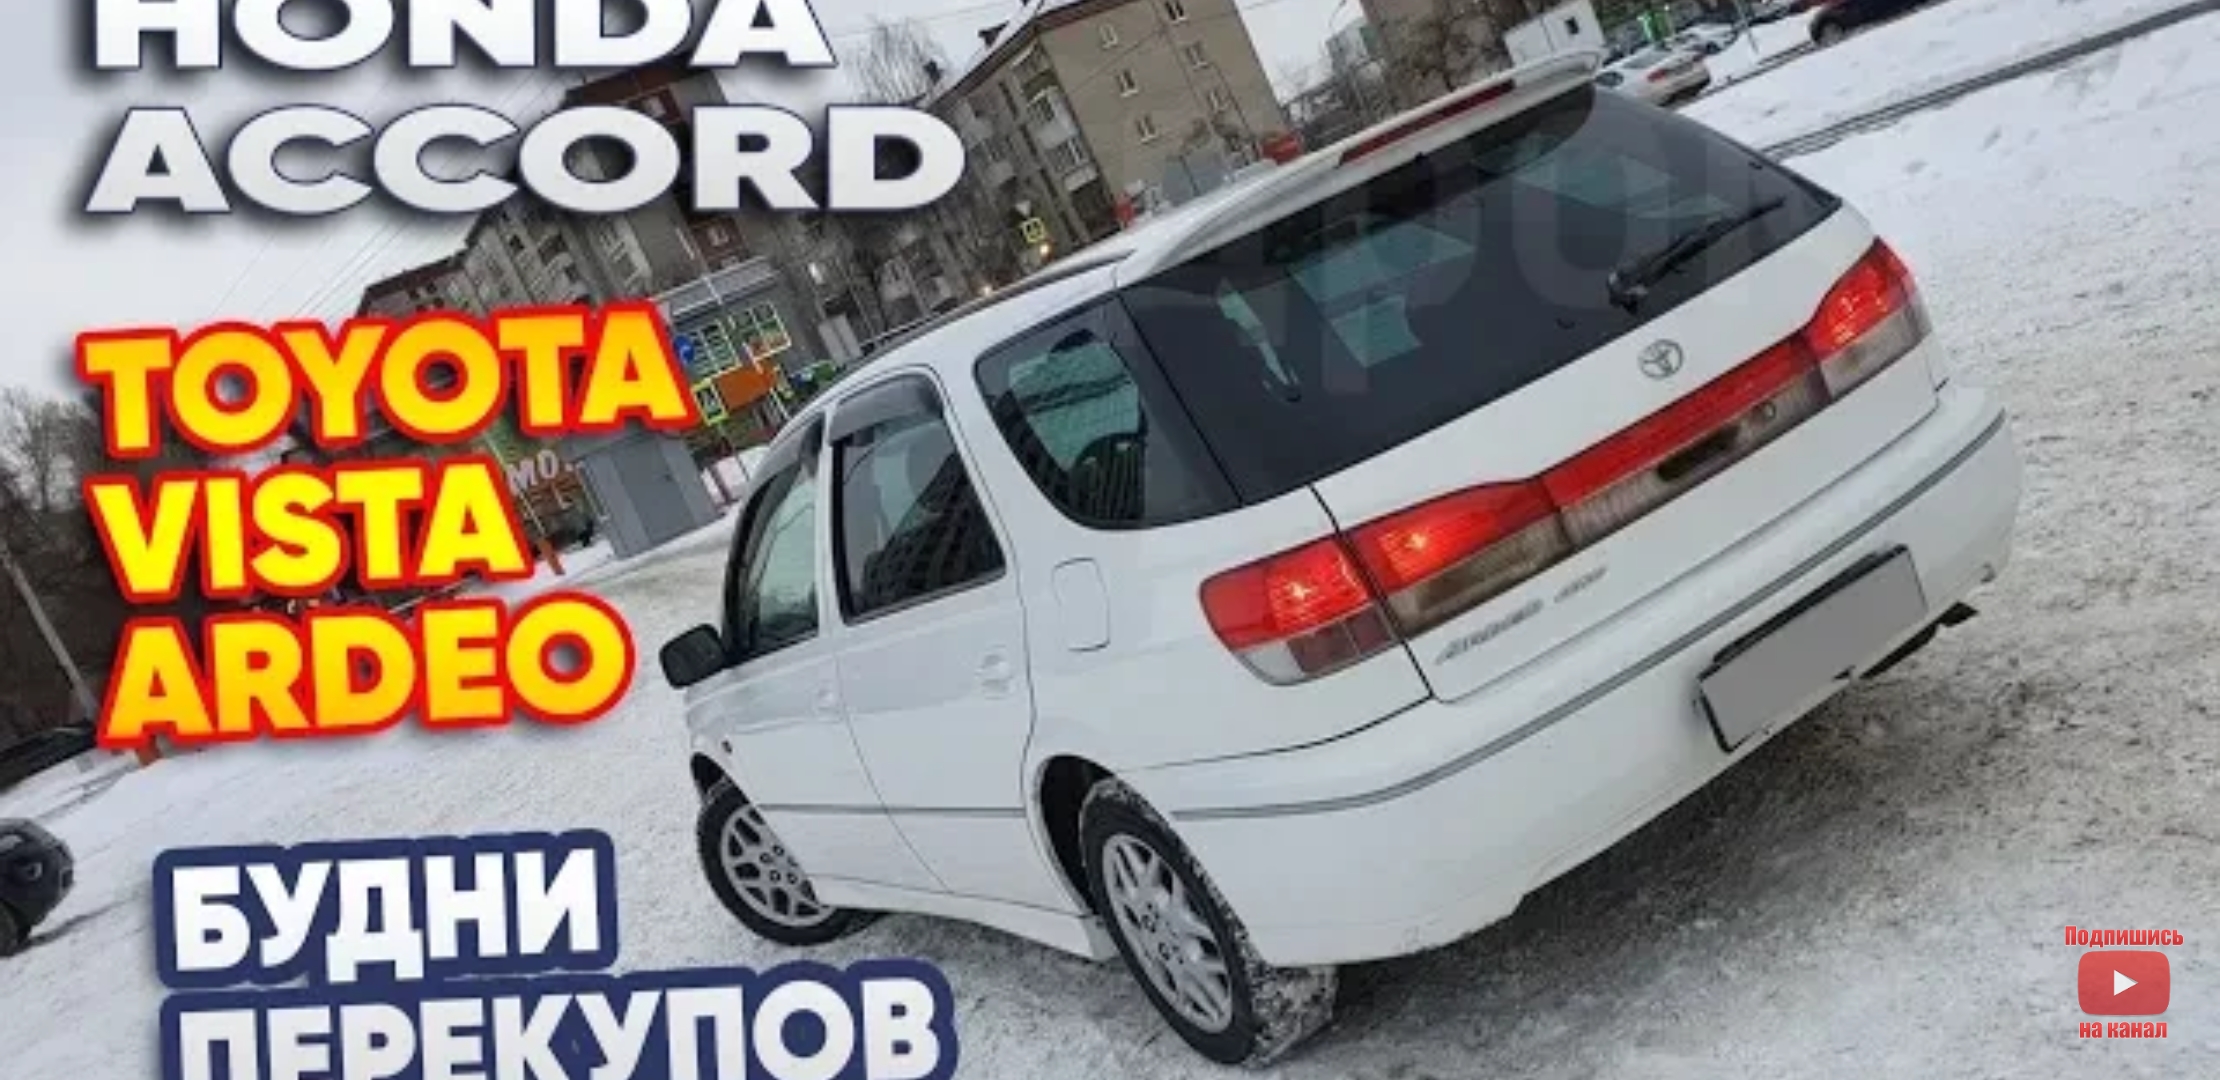 Анонс видео-теста Будни перекупов. Honda Accord и Toyota Vista Ardeo. В поисках авто